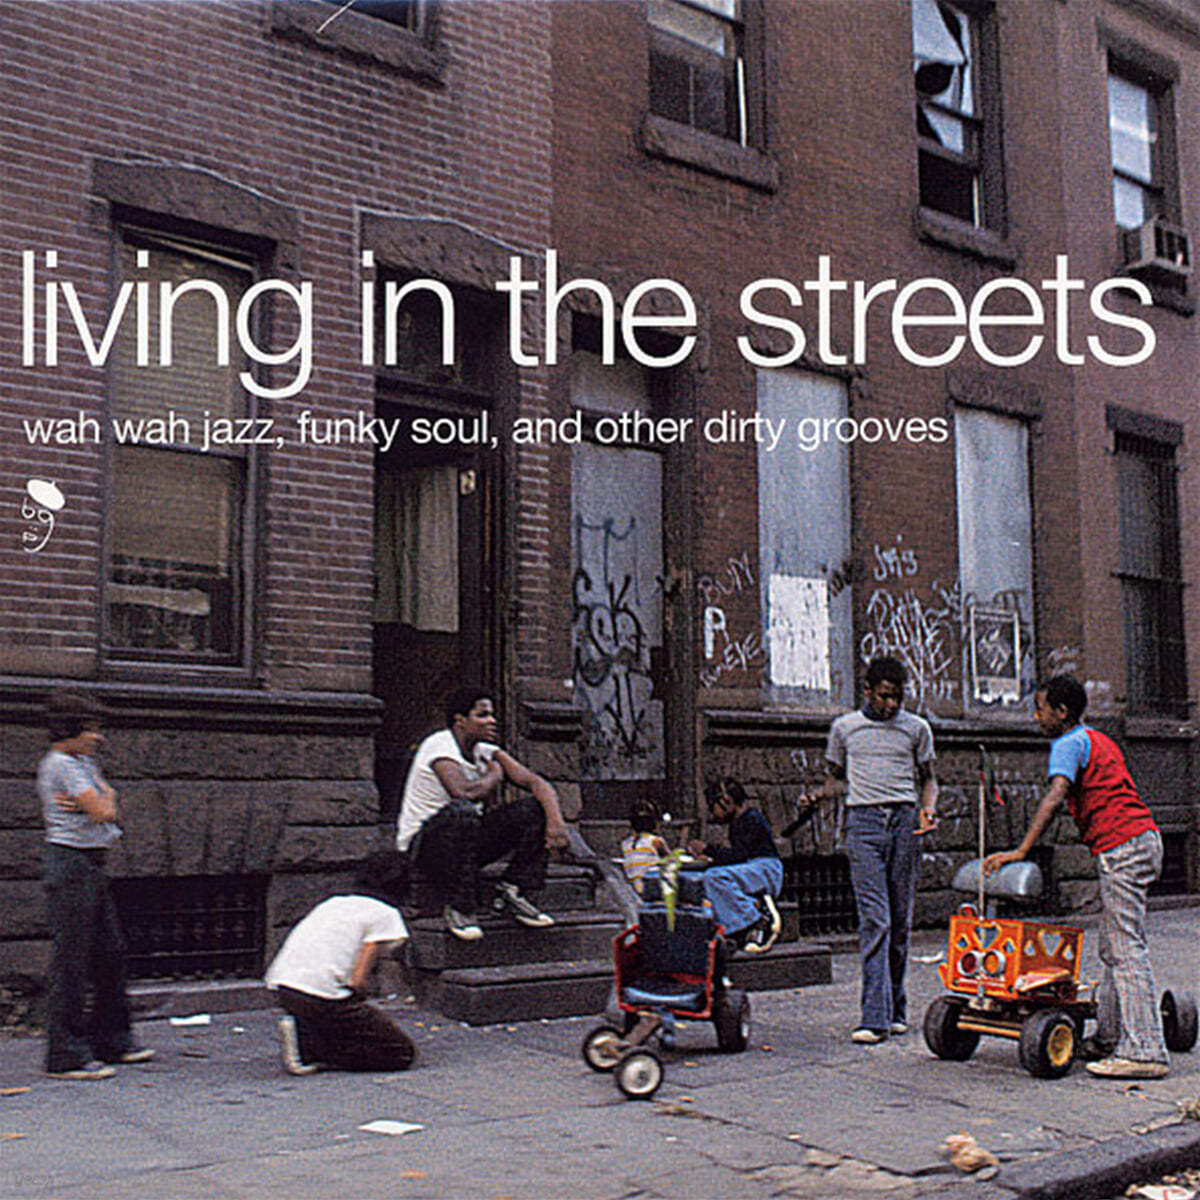 재즈 펑크 컴필레이션 - 리빙 인 더 스트리츠 (Living In The Streets) [2LP]